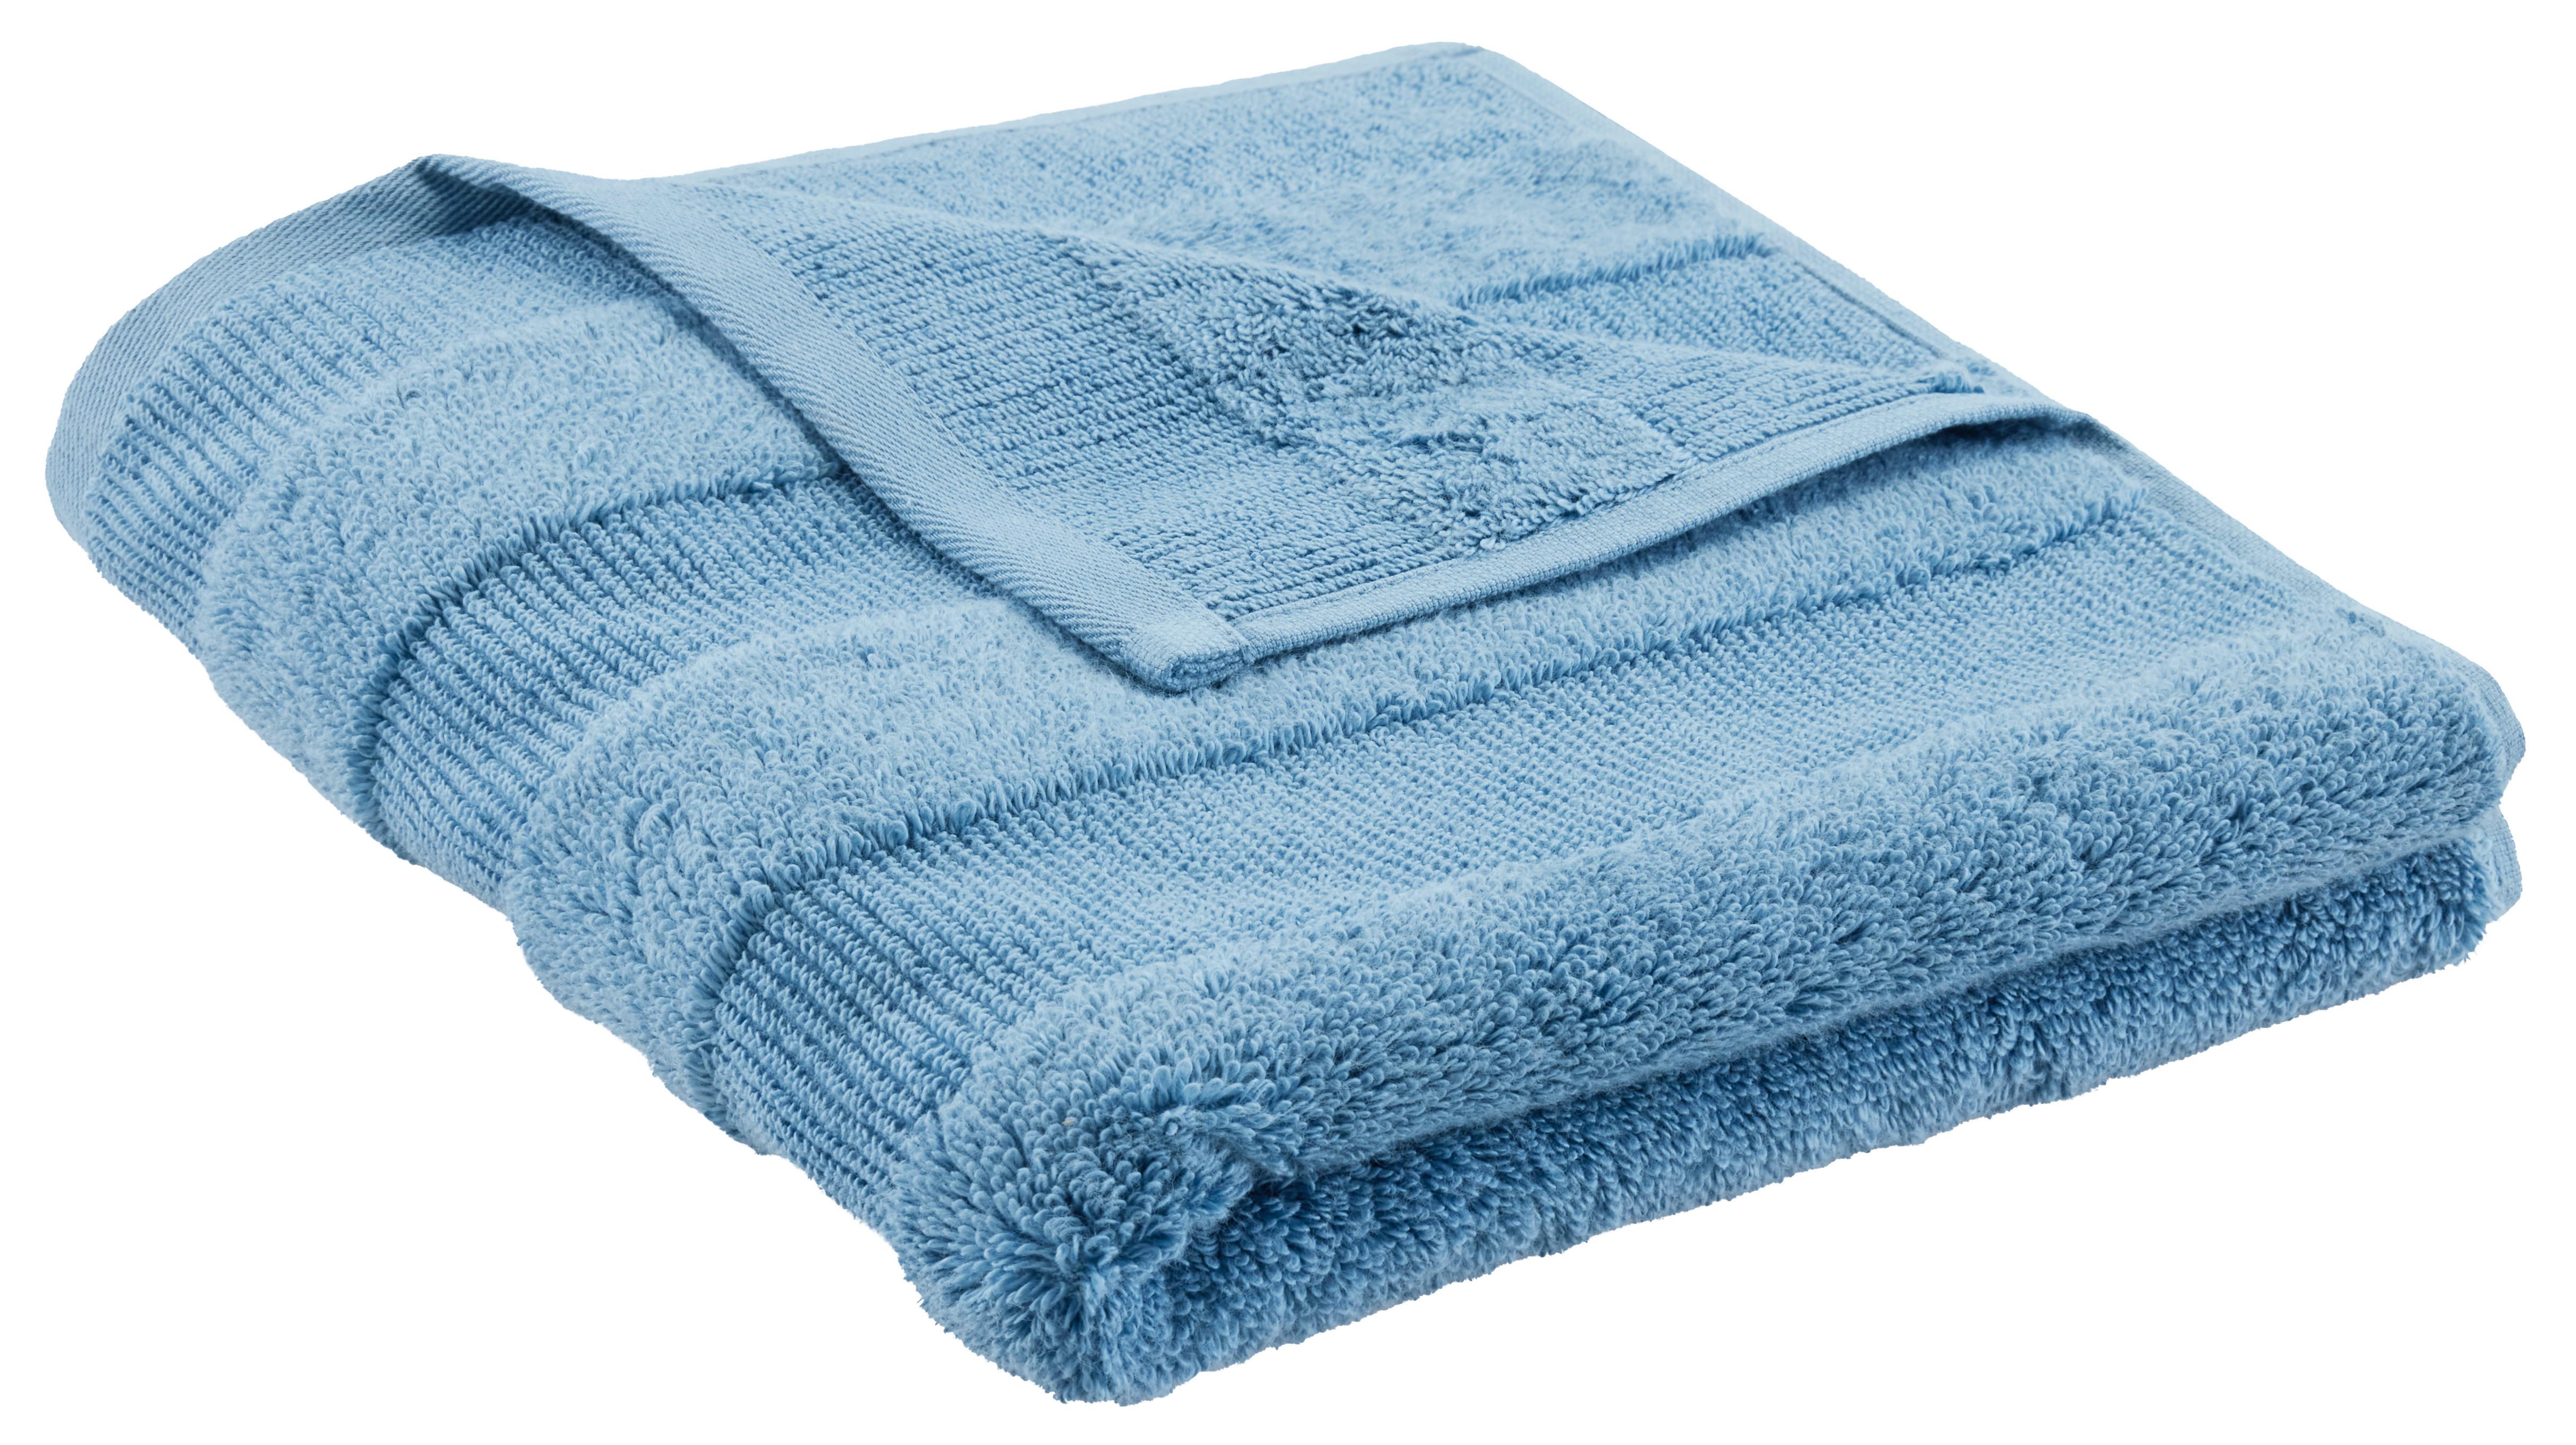 Handtuch Chris in Blau ca. 50x100cm - Blau, Textil (50/100cm) - Premium Living